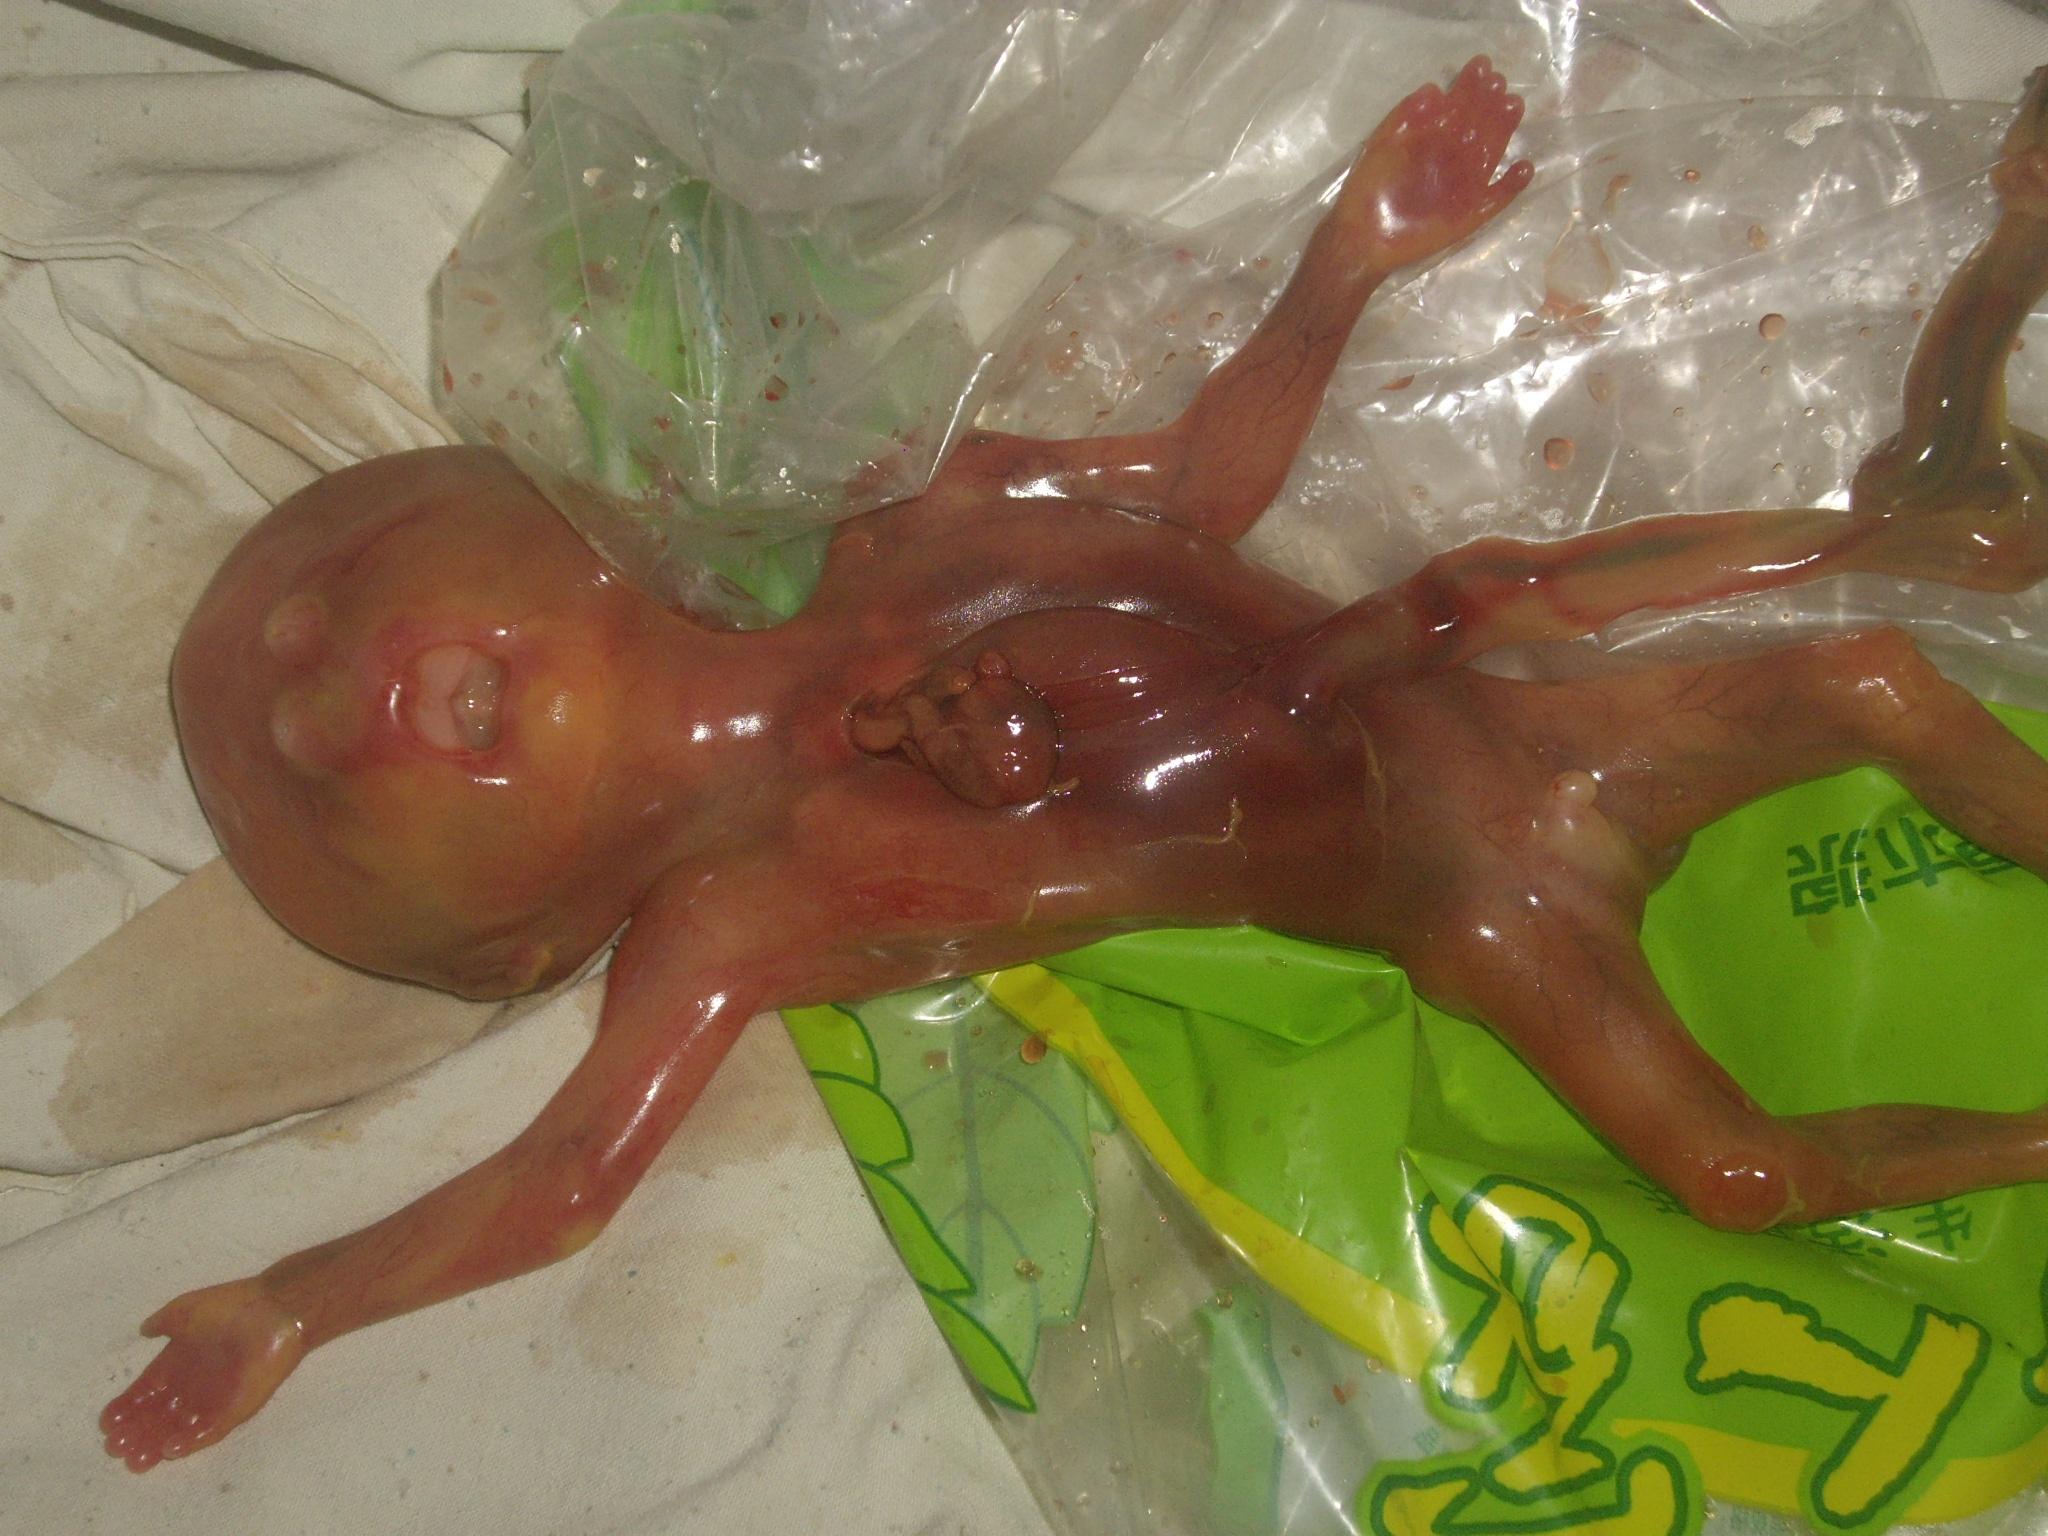 70天胎儿的样子图片图片